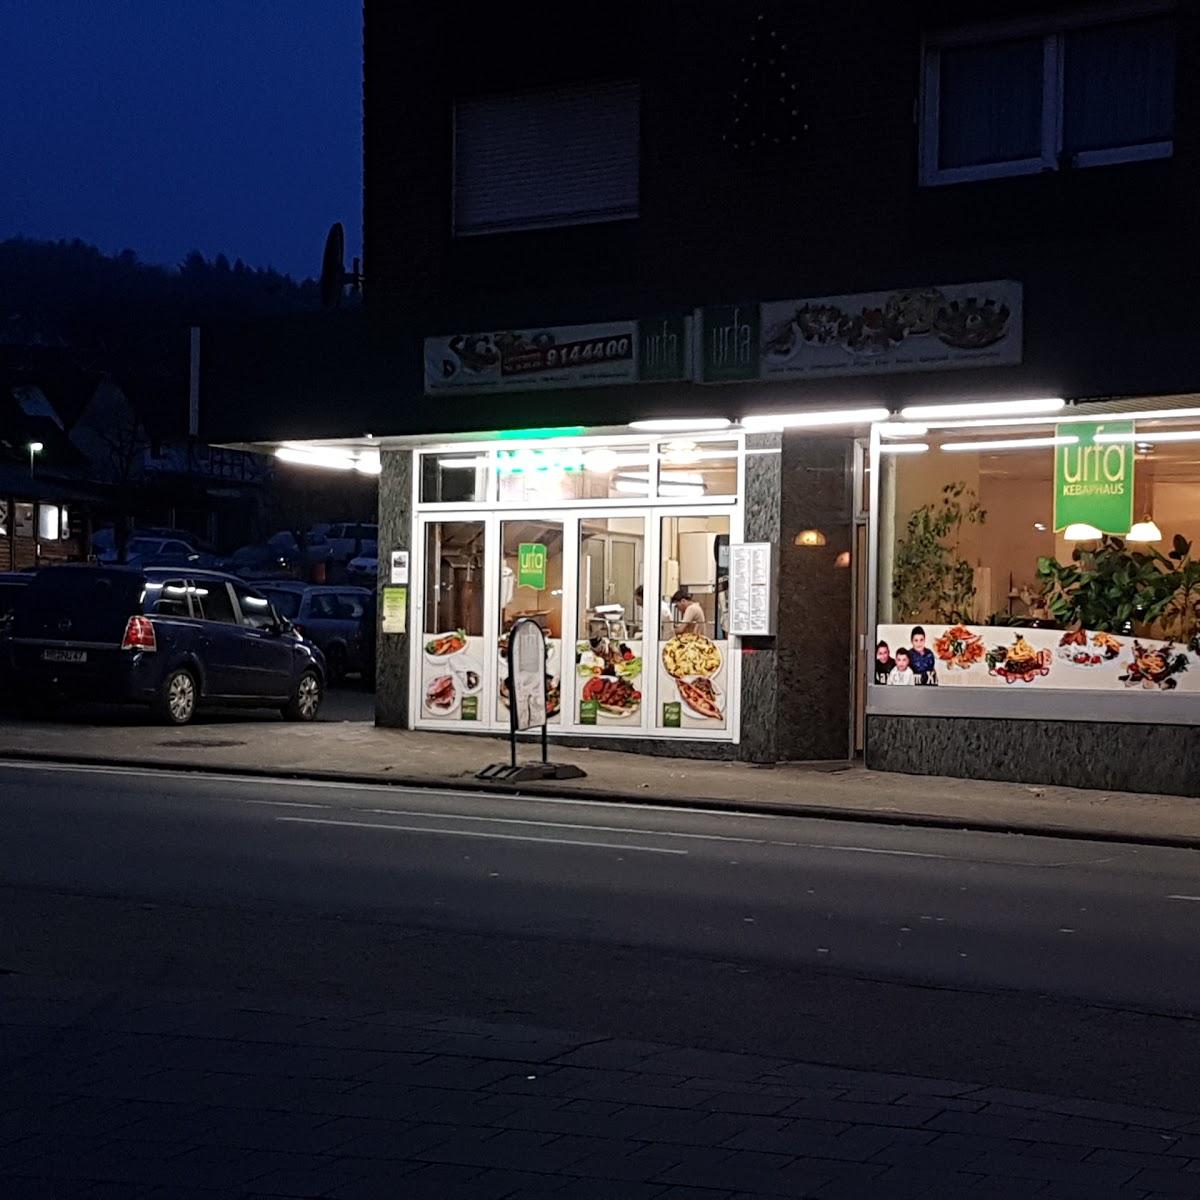 Restaurant "Urfa Kebaphaus" in  Gladenbach